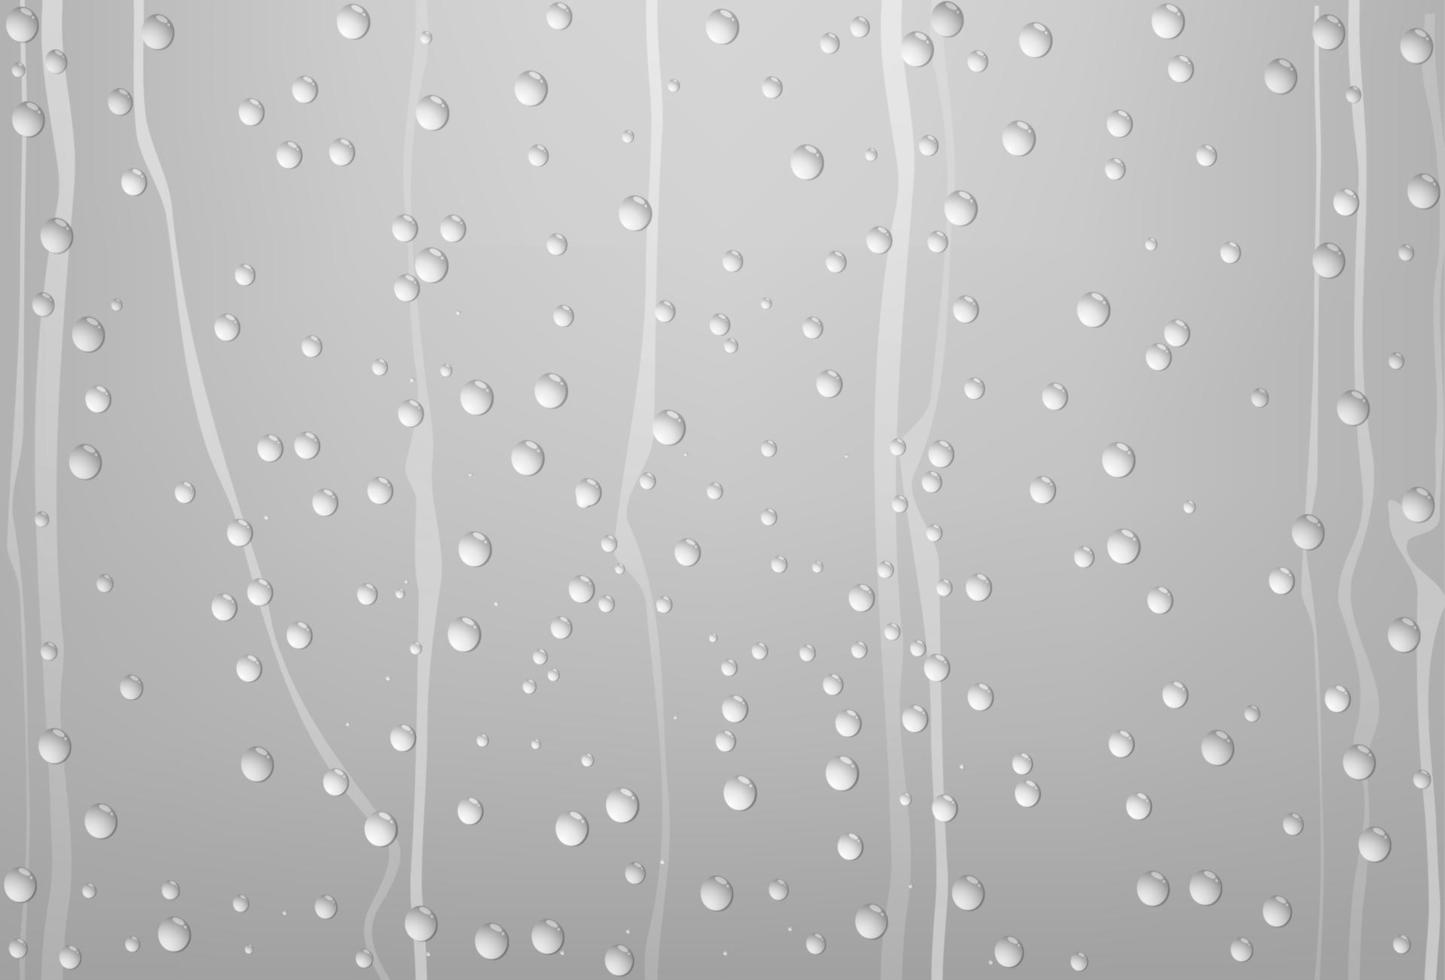 regn vatten droppar på glas med grå bakgrund, vektor illustration